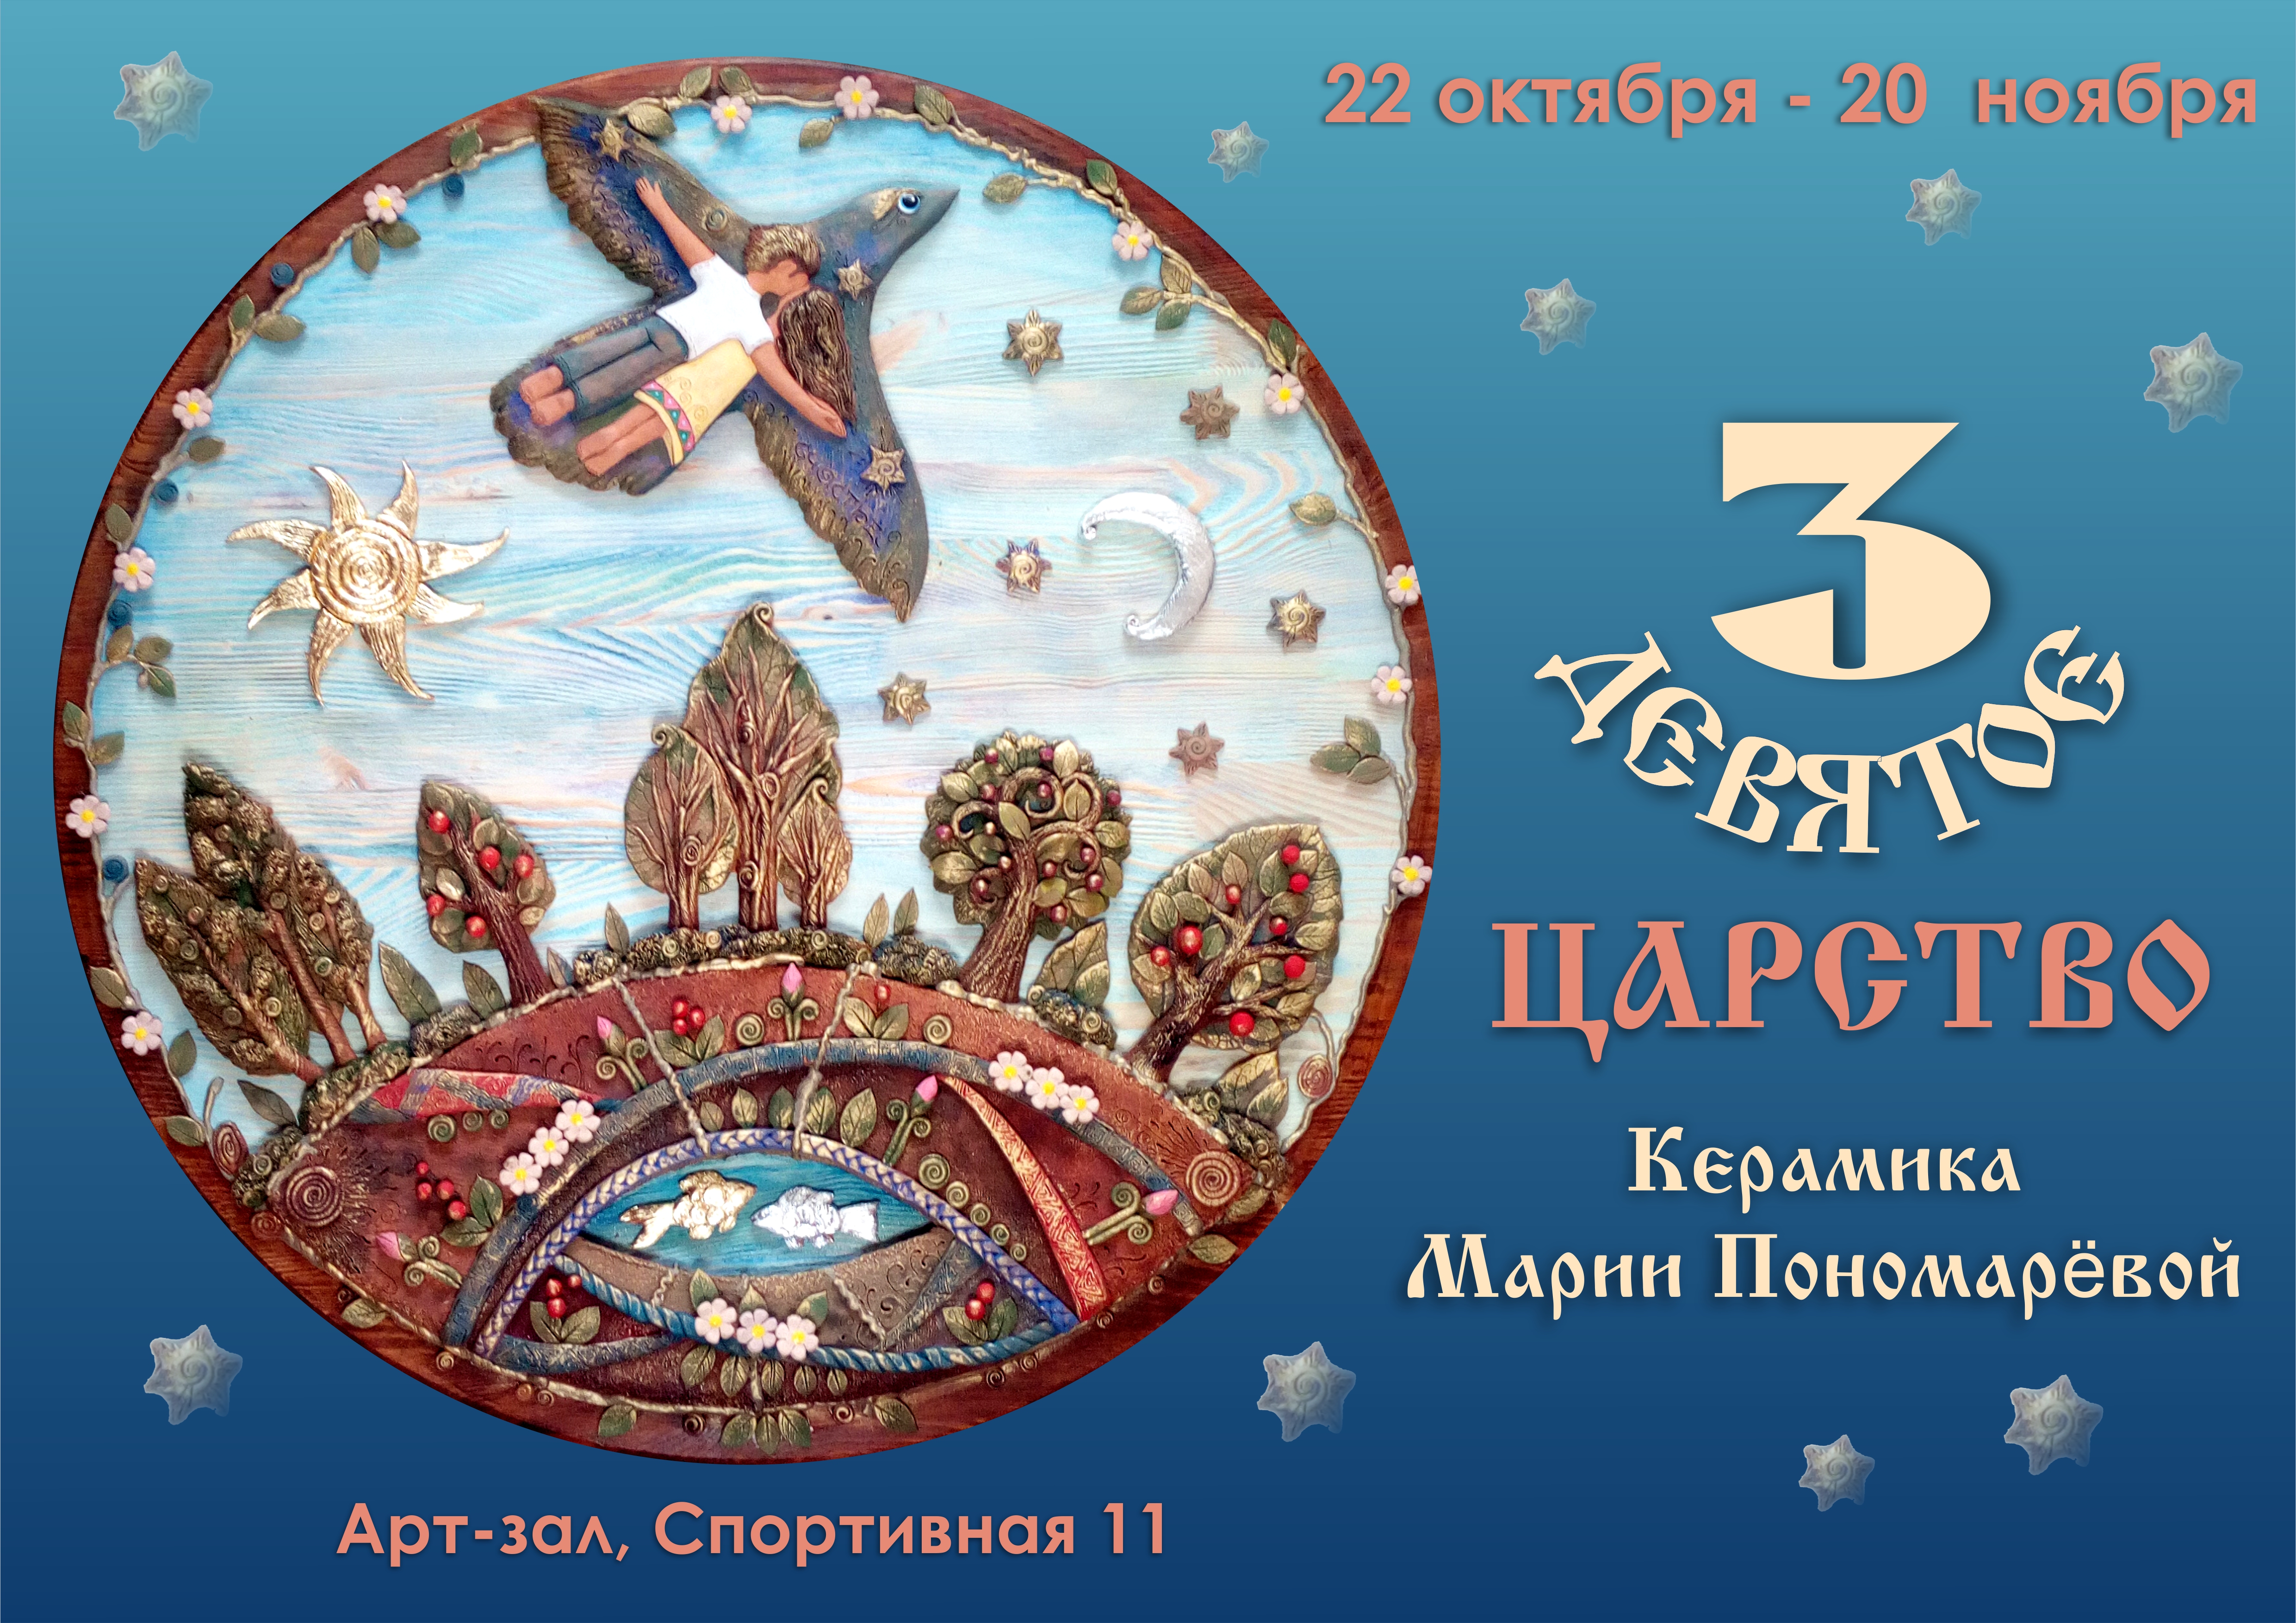  «3-девятое царство» выставки авторской керамики Марии Пономаревой, 22 октября - 24 ноября, арт-зал, ул.Спортивная,11. 